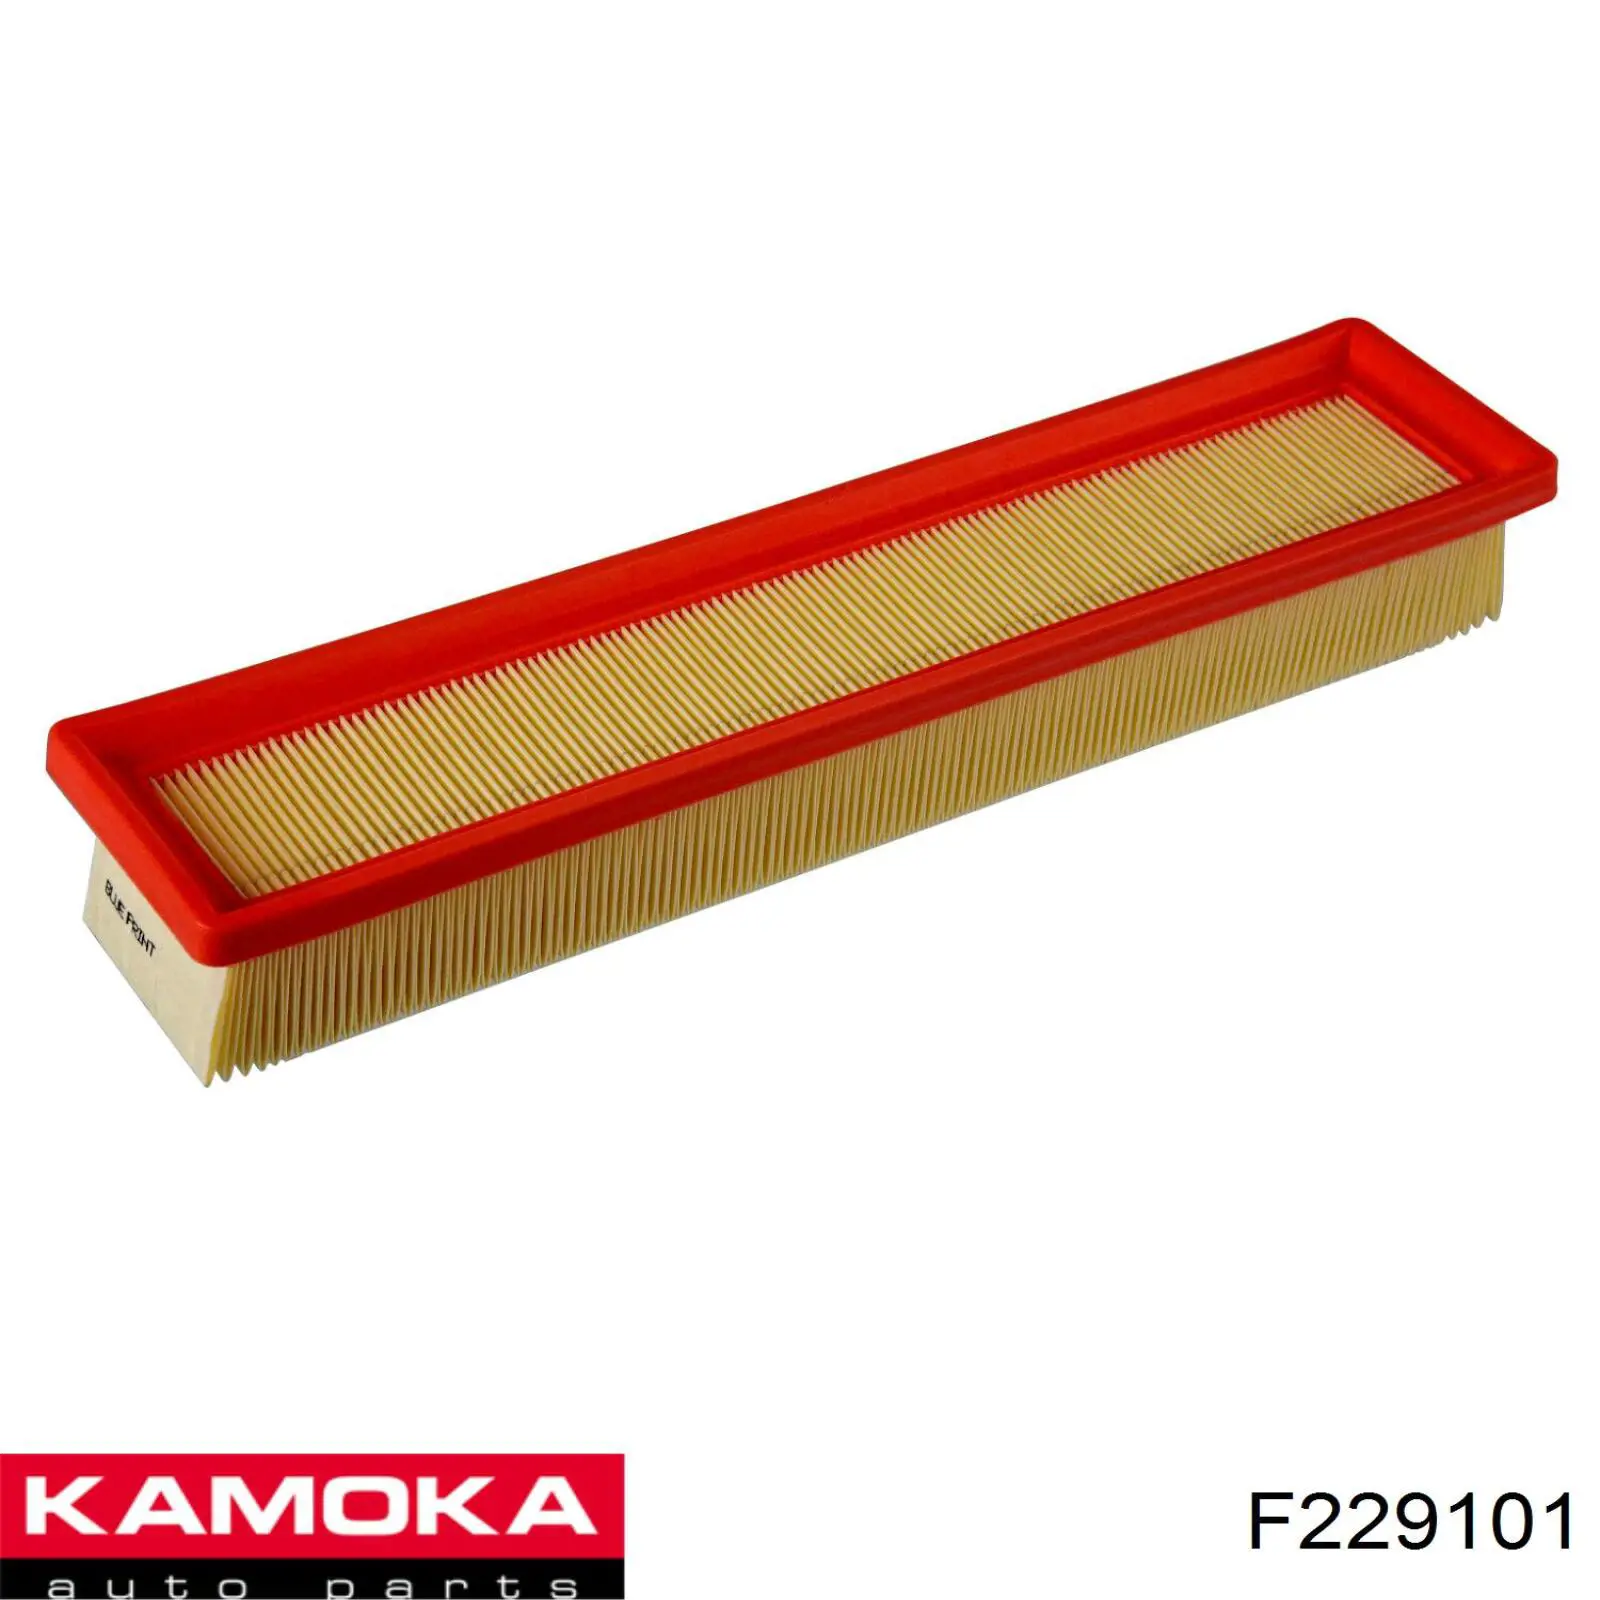 F229101 Kamoka filtro de aire